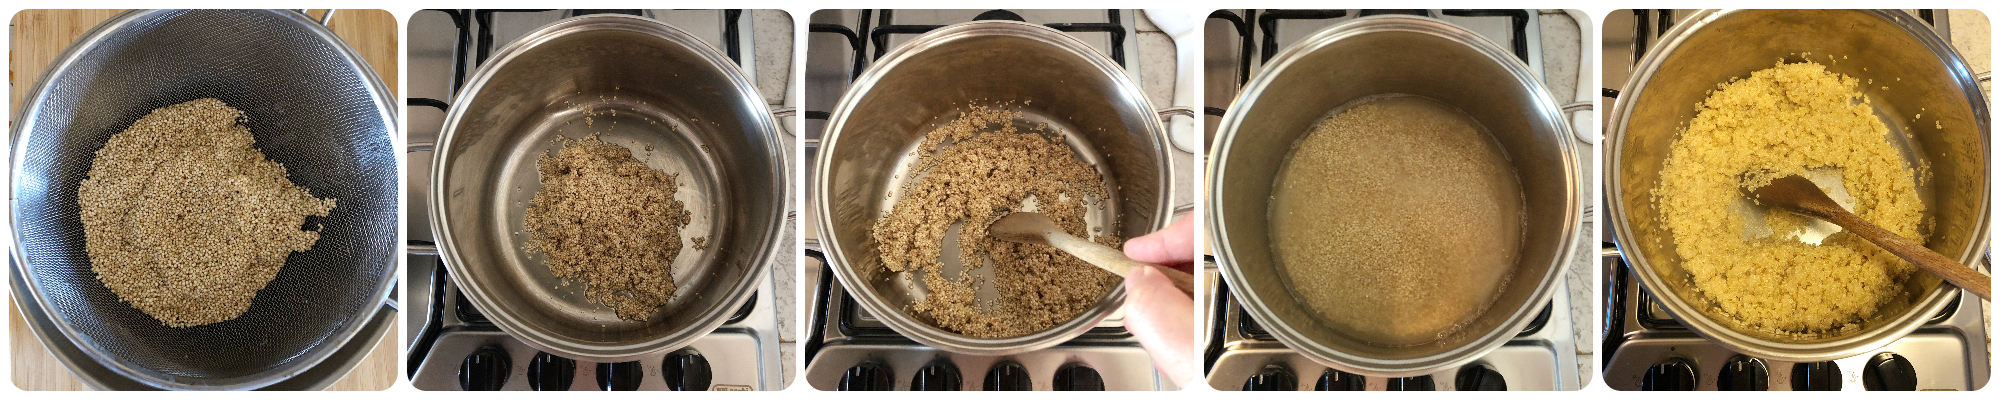 Come cucinare la quinoa fasi